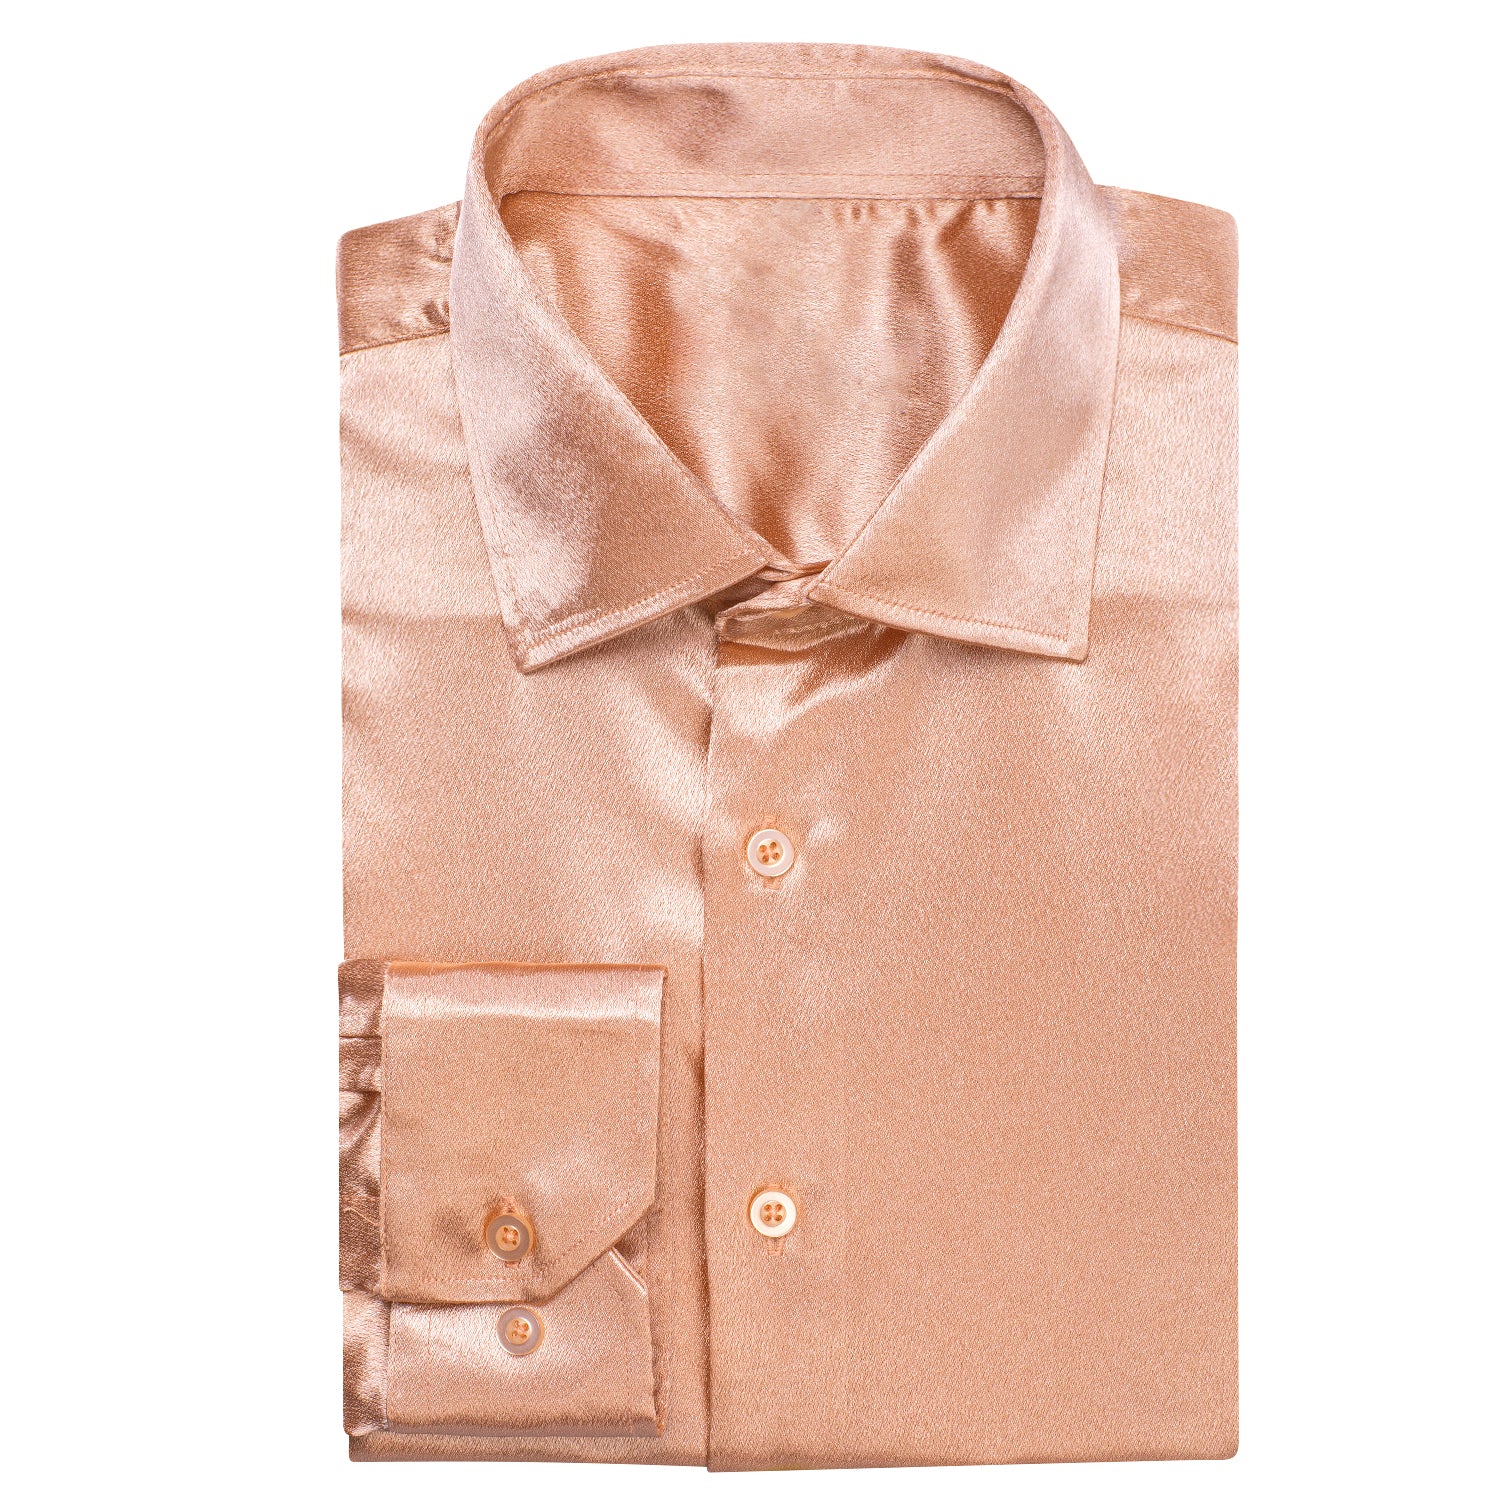 New Rose Golden Satin Silk Men's Long Sleeve Shirt